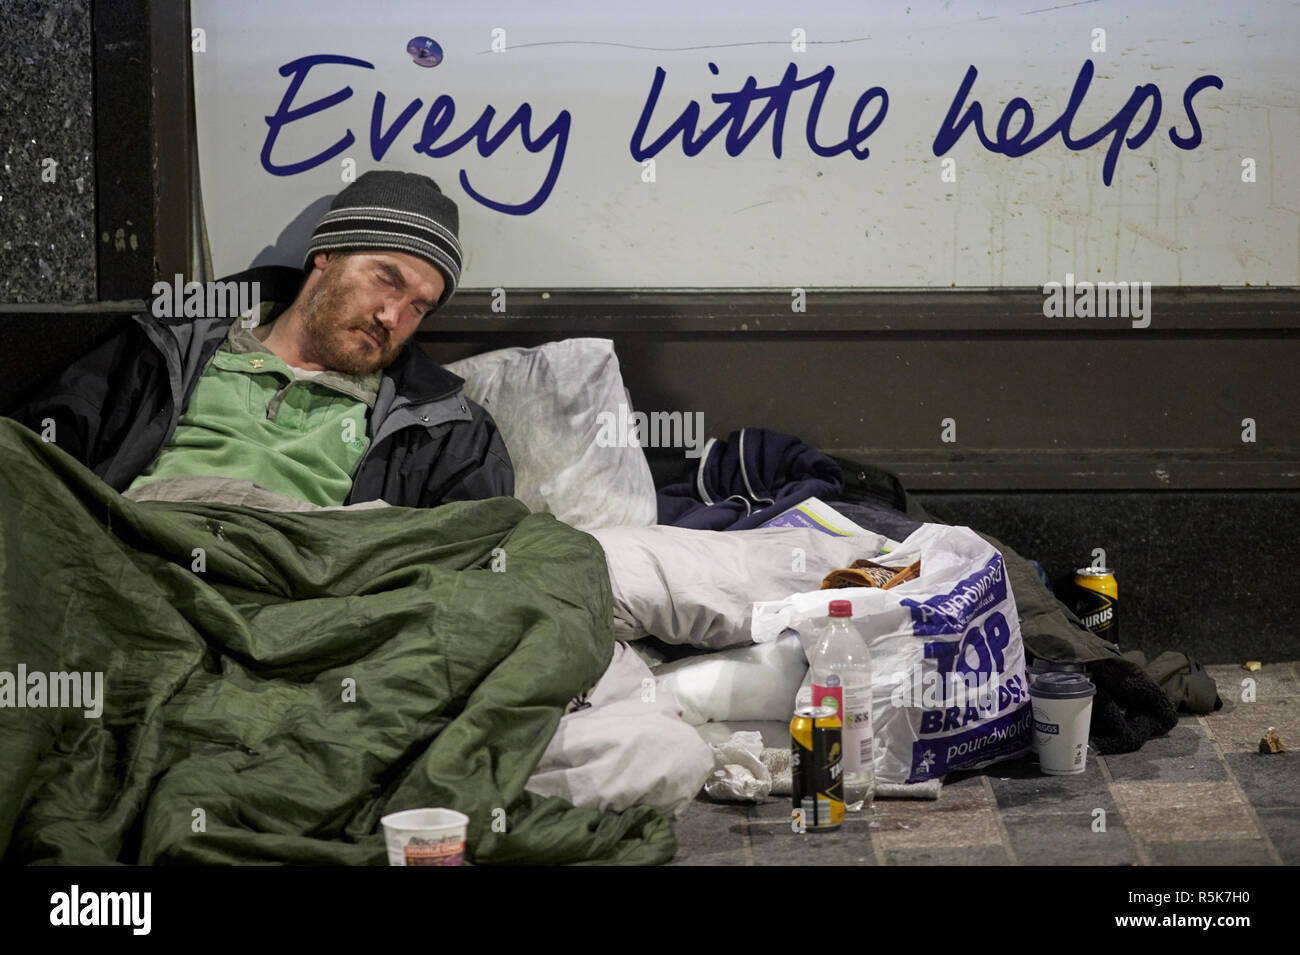 Das Stadtzentrum von Liverpool schlafen Obdachlose betteln Mann mit Chaos um ihn herum, während er schläft, jeder kleine hilft Tesco slogan Stockfoto